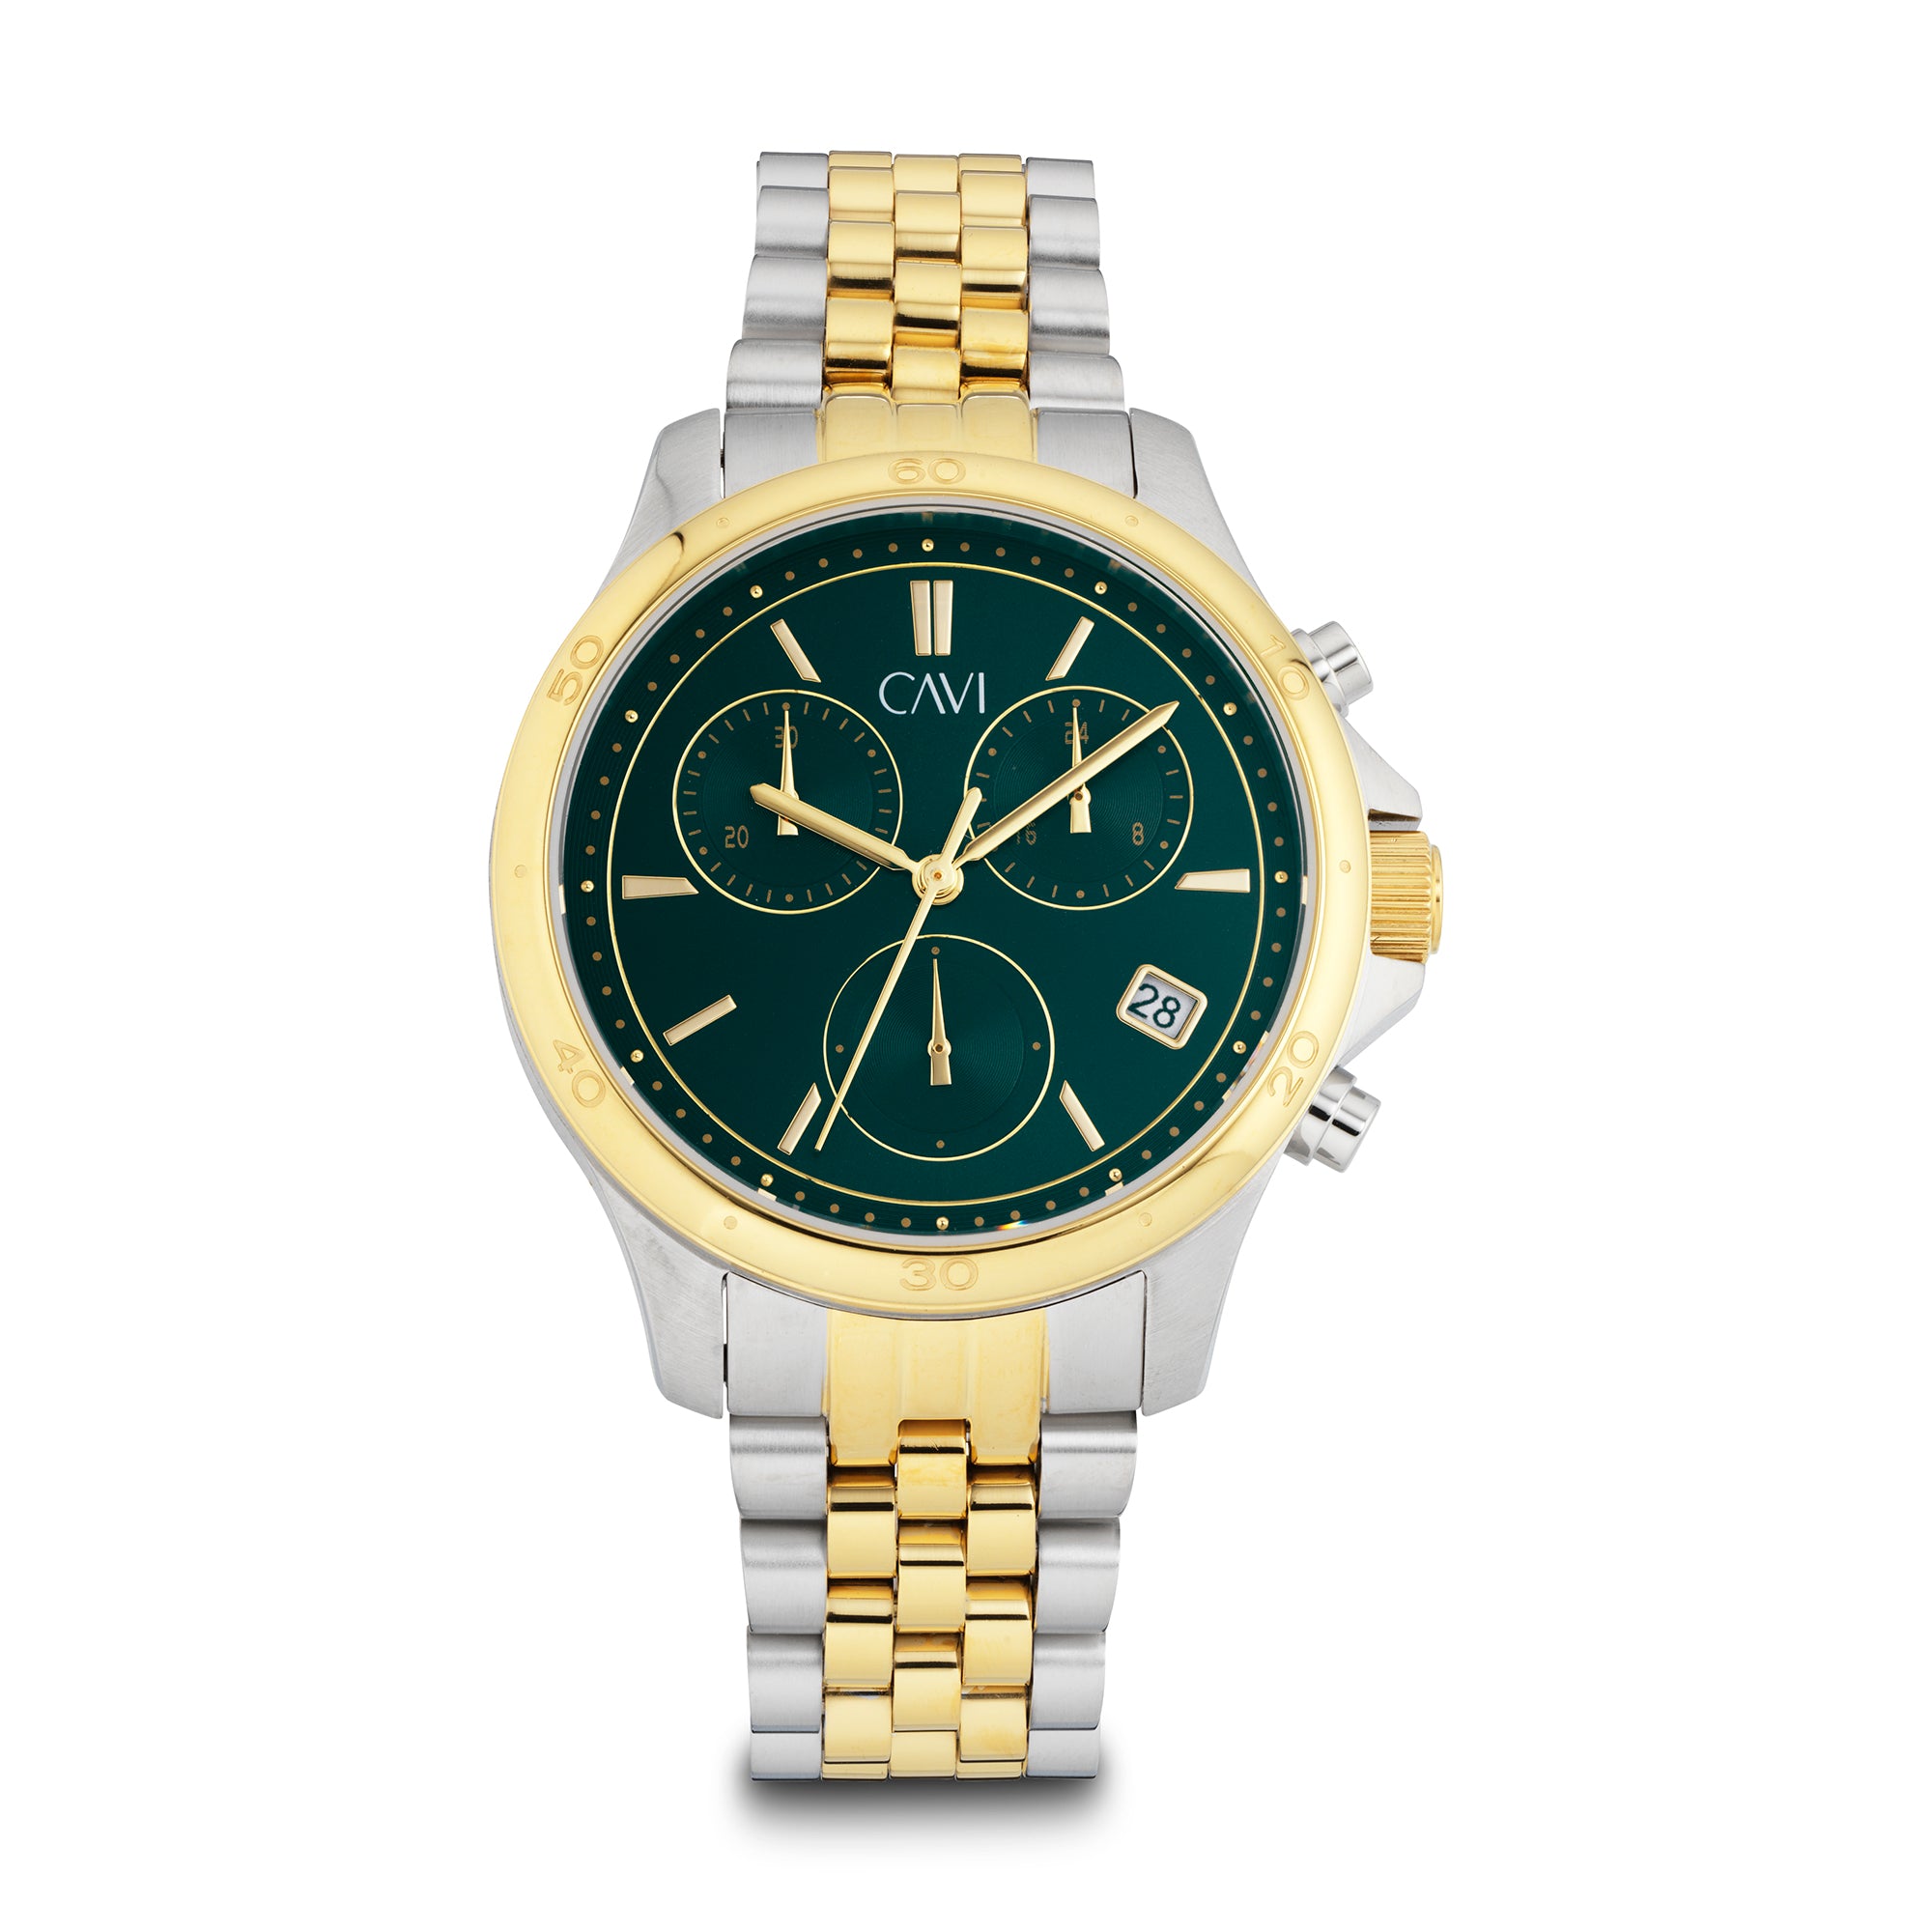 Billede af CAVI Watches - Vega Green ur bicolor stål 38 mm